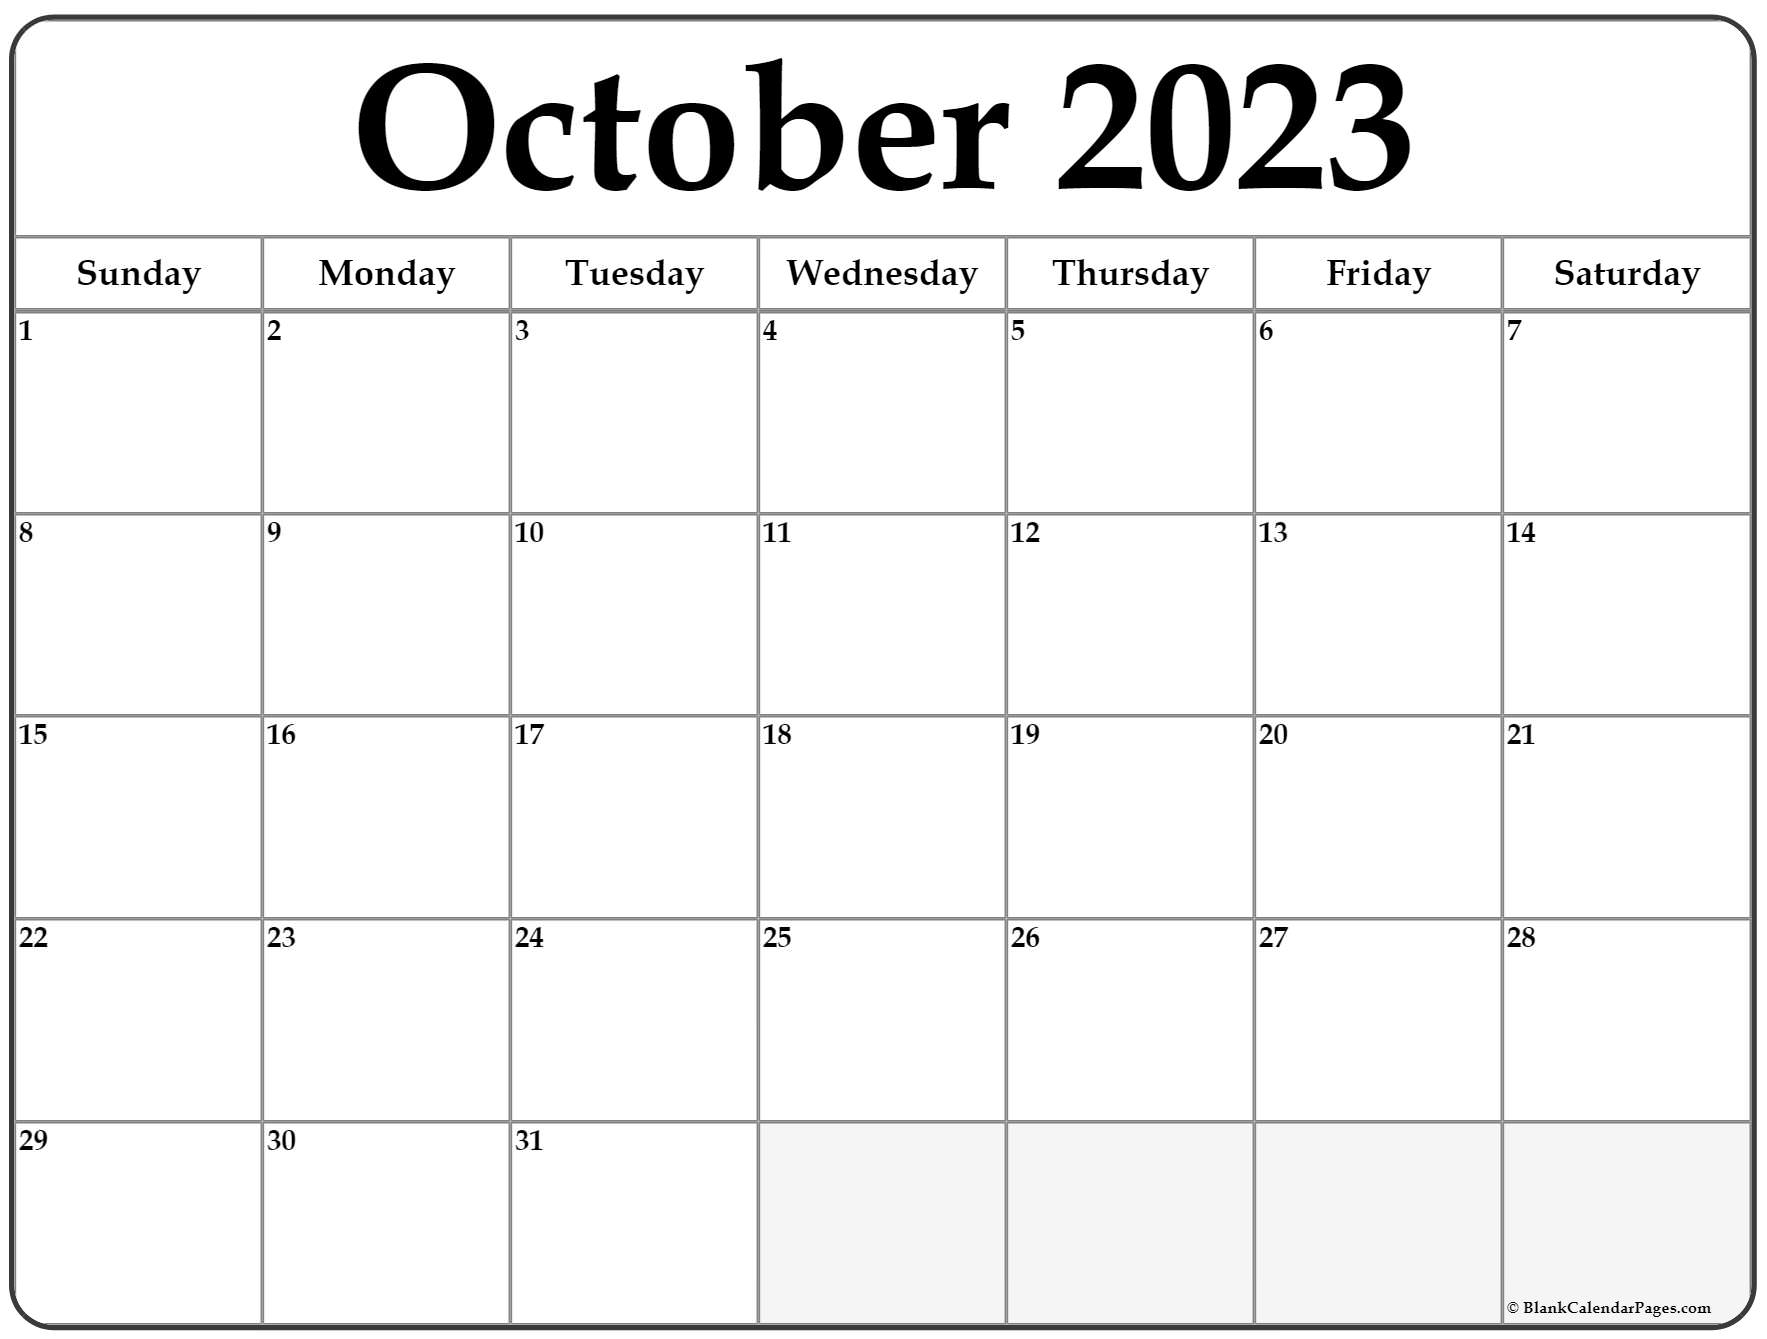 October 2023 Printable Calendar 2023 Calendar Printable